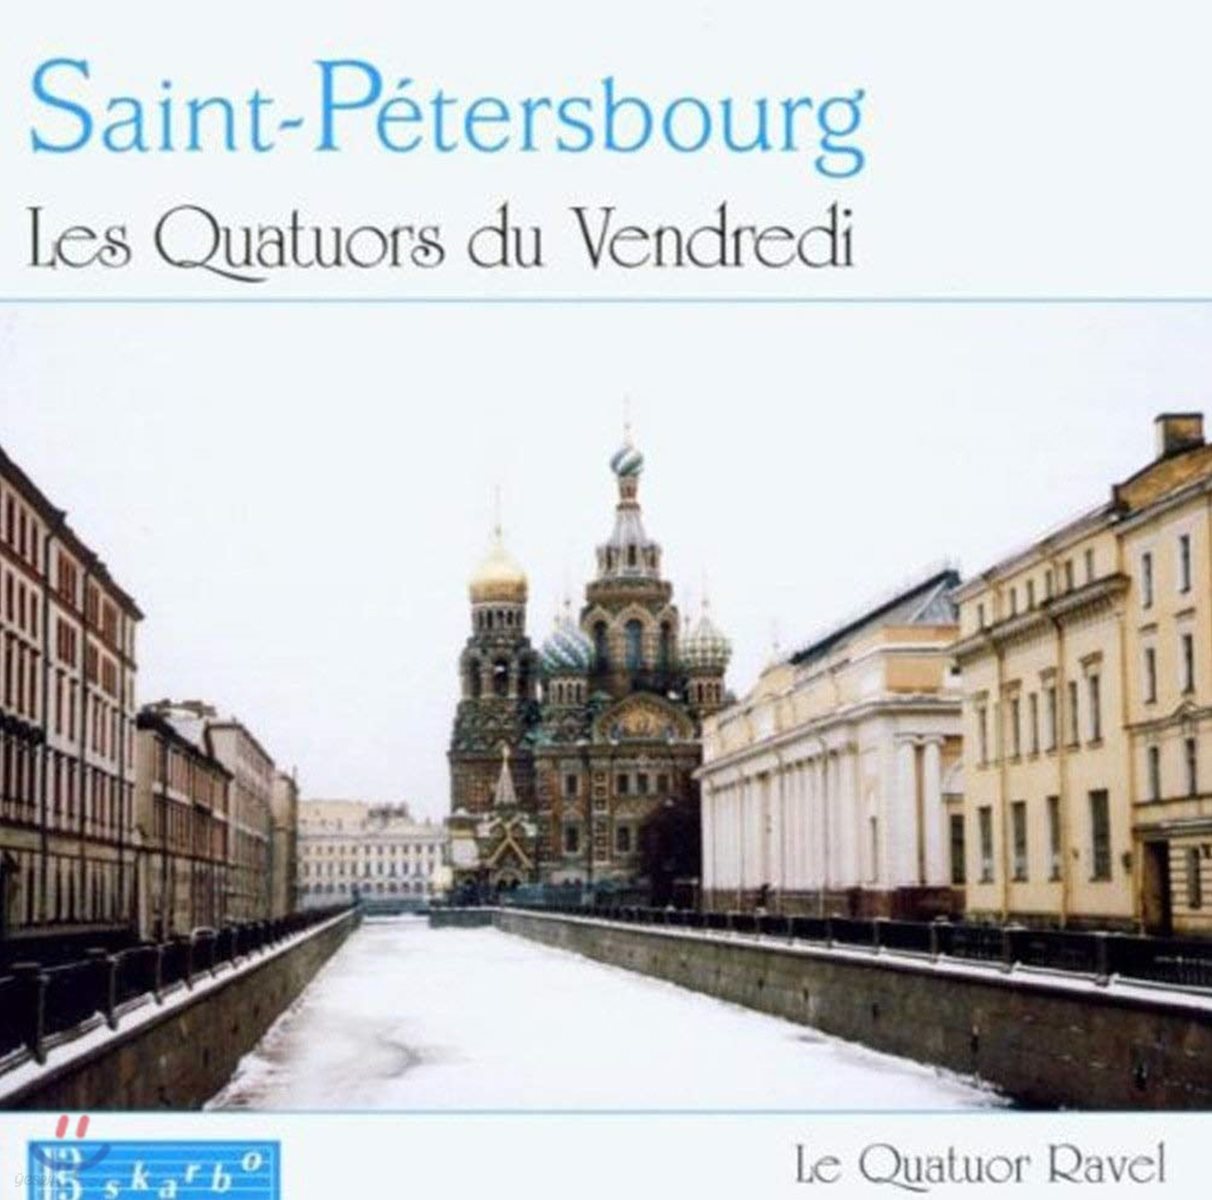 Ravel String Quartet 금요일의 현악 사중주 - 글라주노프 / 리야도프 / 블러멘펠드 / 림스키-코르사코프 (St. Petersburg - Les Quatuors du Vendredi)